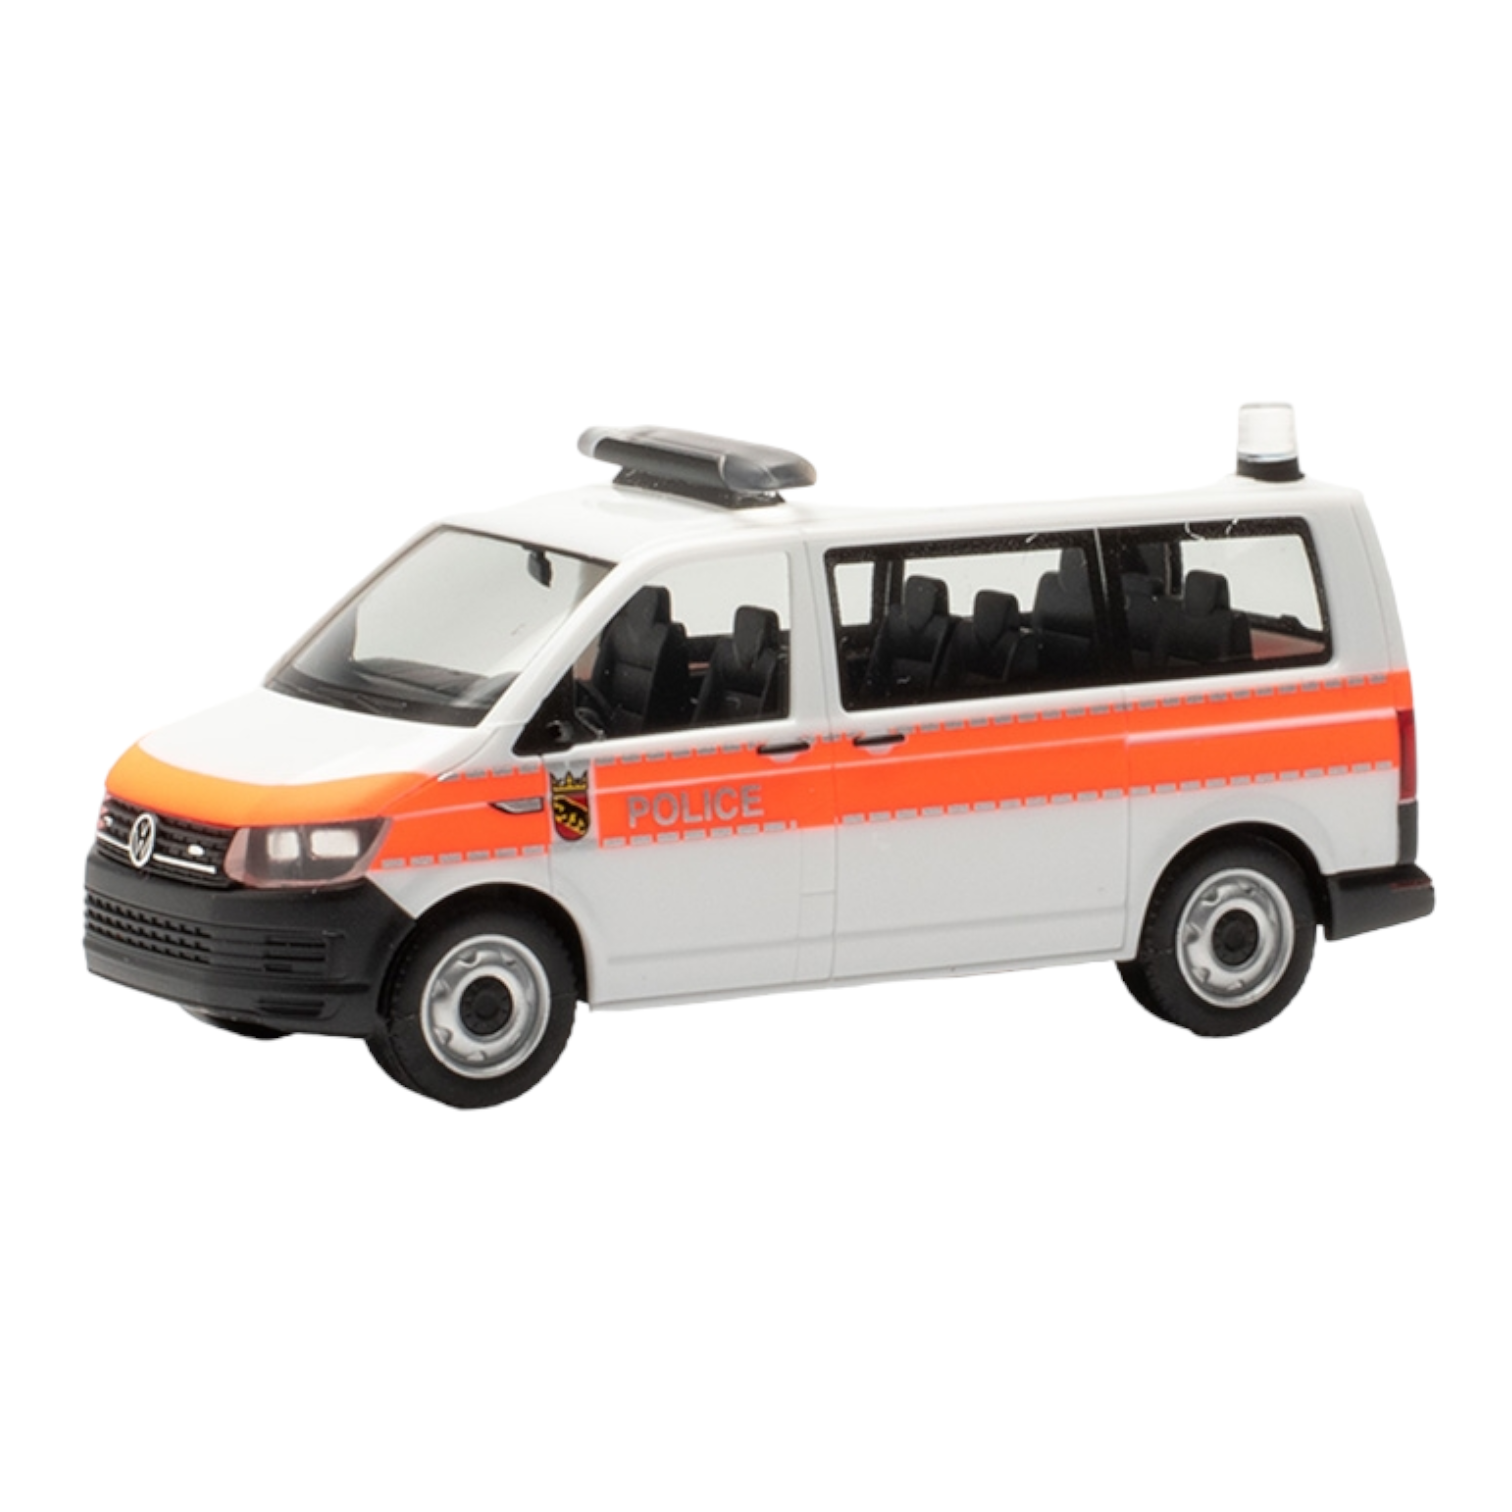 Herpa 096911 VW T6 Bus Police Funkstreifenwagen Bern Modellfahrzeug H0 1:87